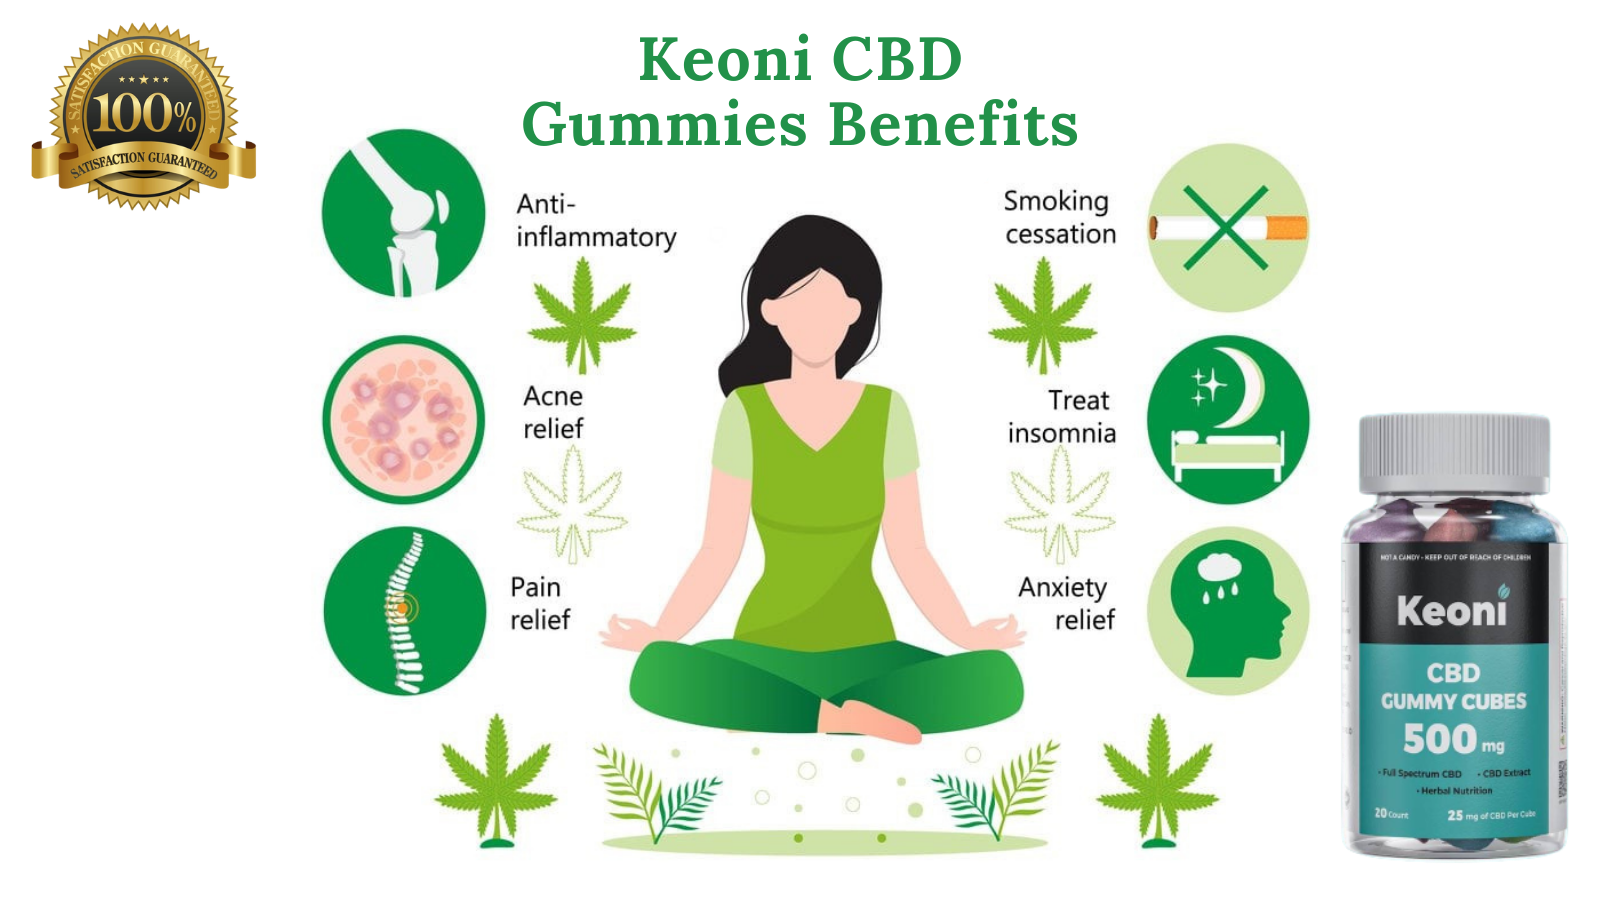 Keoni CBD Gummies Benefits